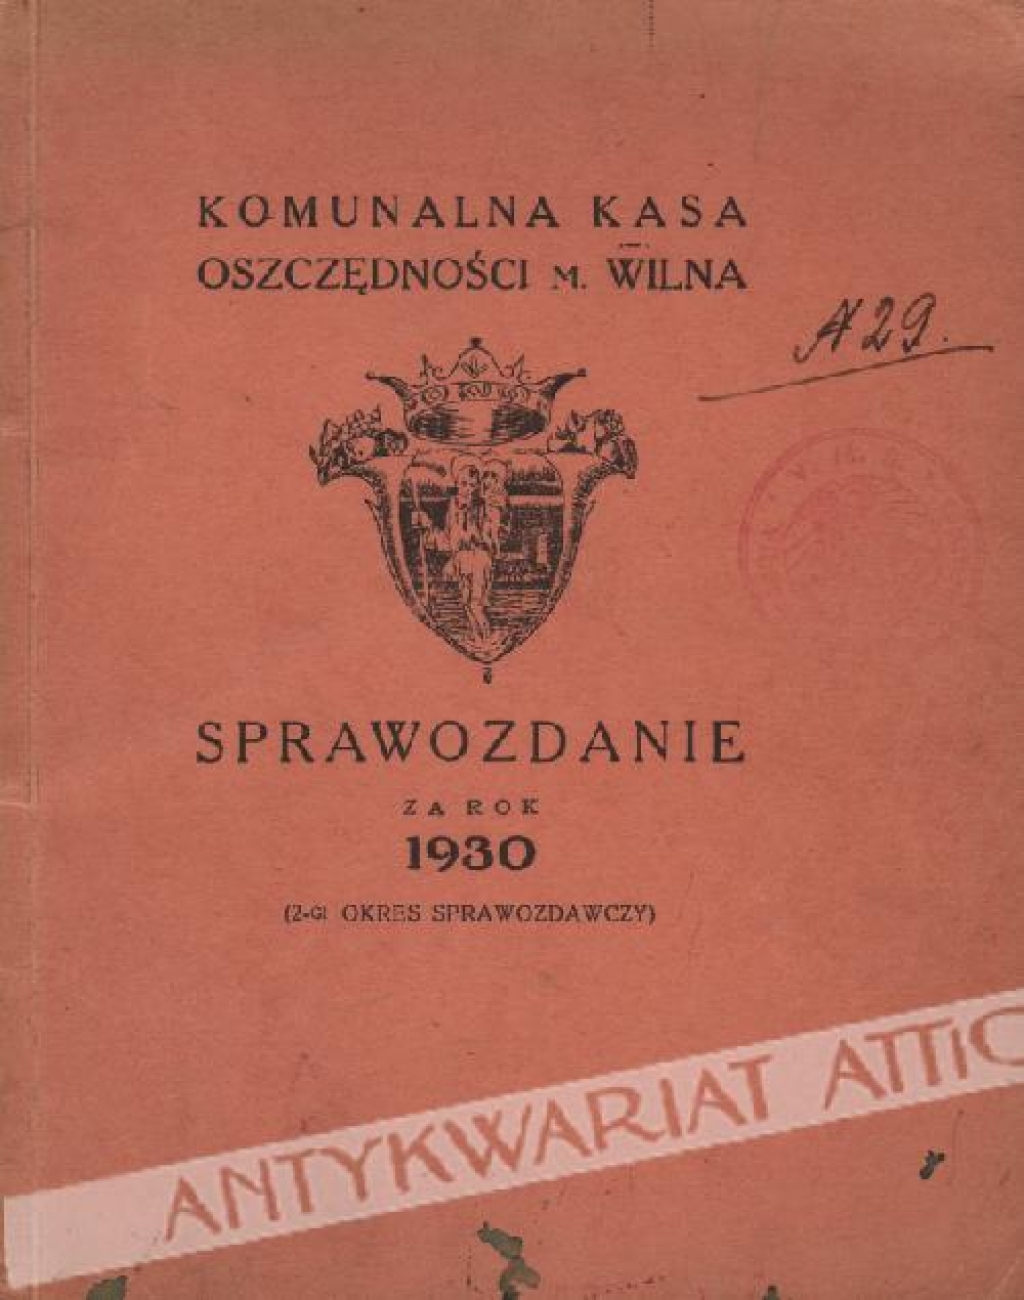 Komunalna Kasa Oszczędności m. Wilna. Sprawozdanie za rok 1930 (2-gi okres sprawczy)